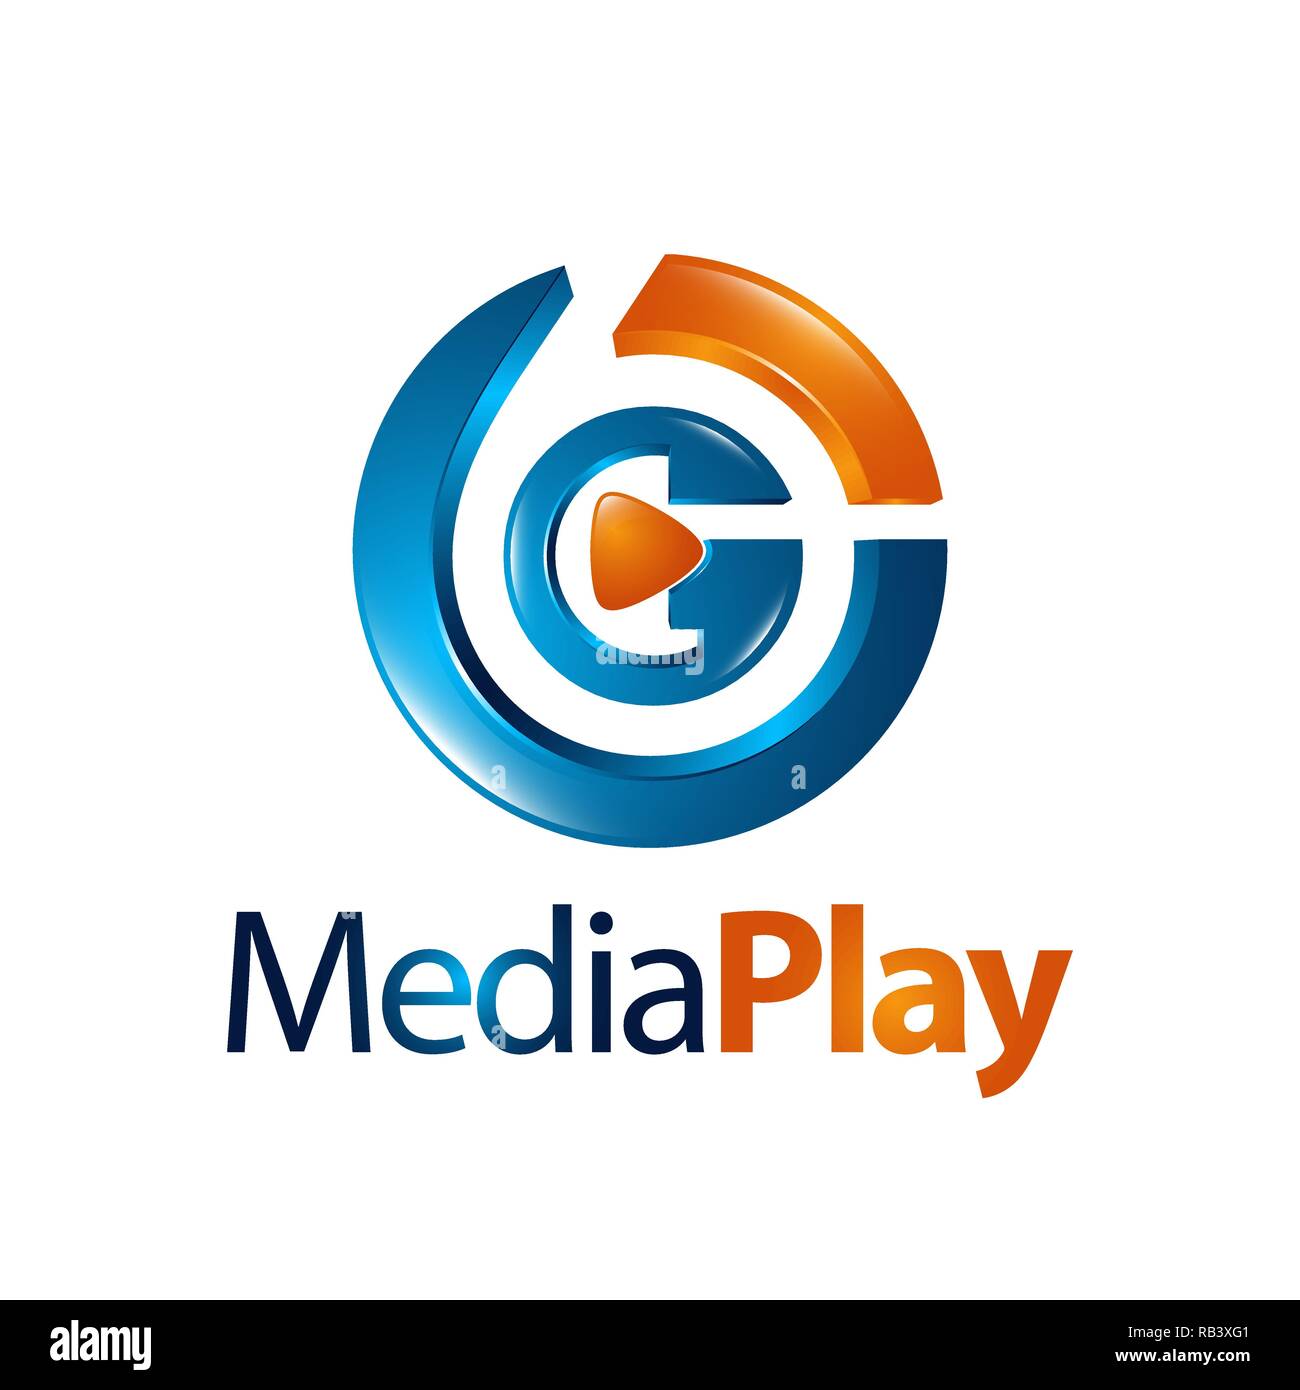 Circle three dimensional media play logo concept design idea Stock Vector